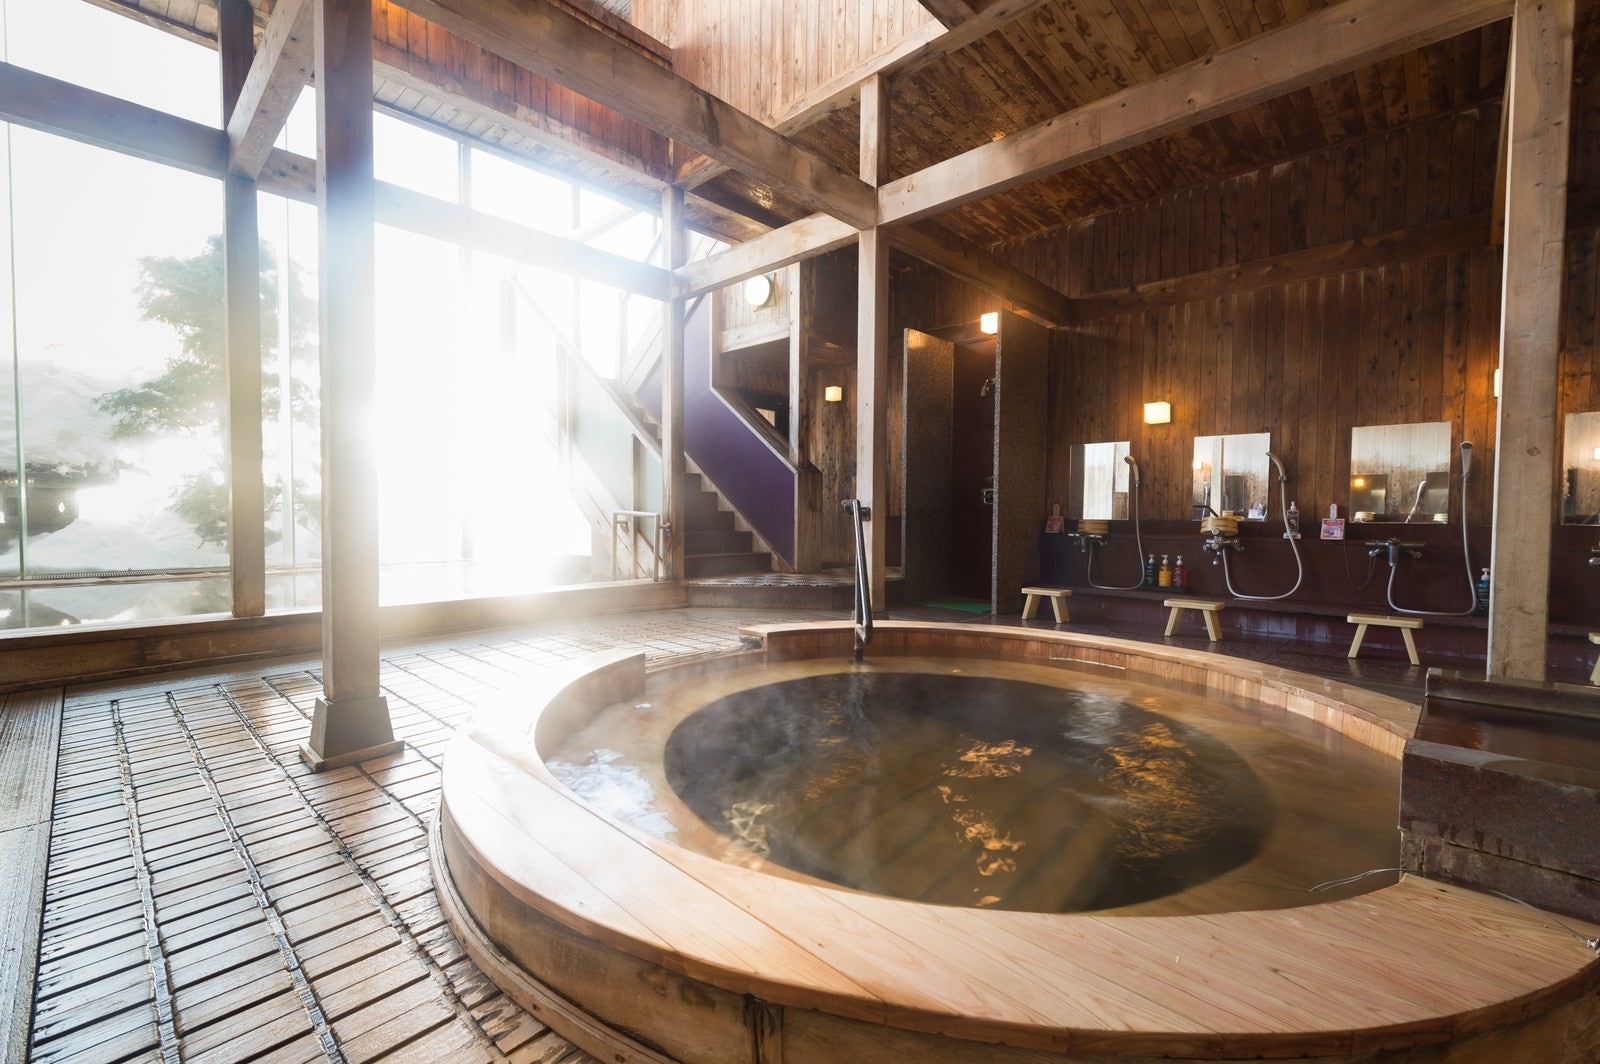 「コウノマキを使用した珍しい源泉かけ流しの浴槽がある岡田旅館の内湯」の写真